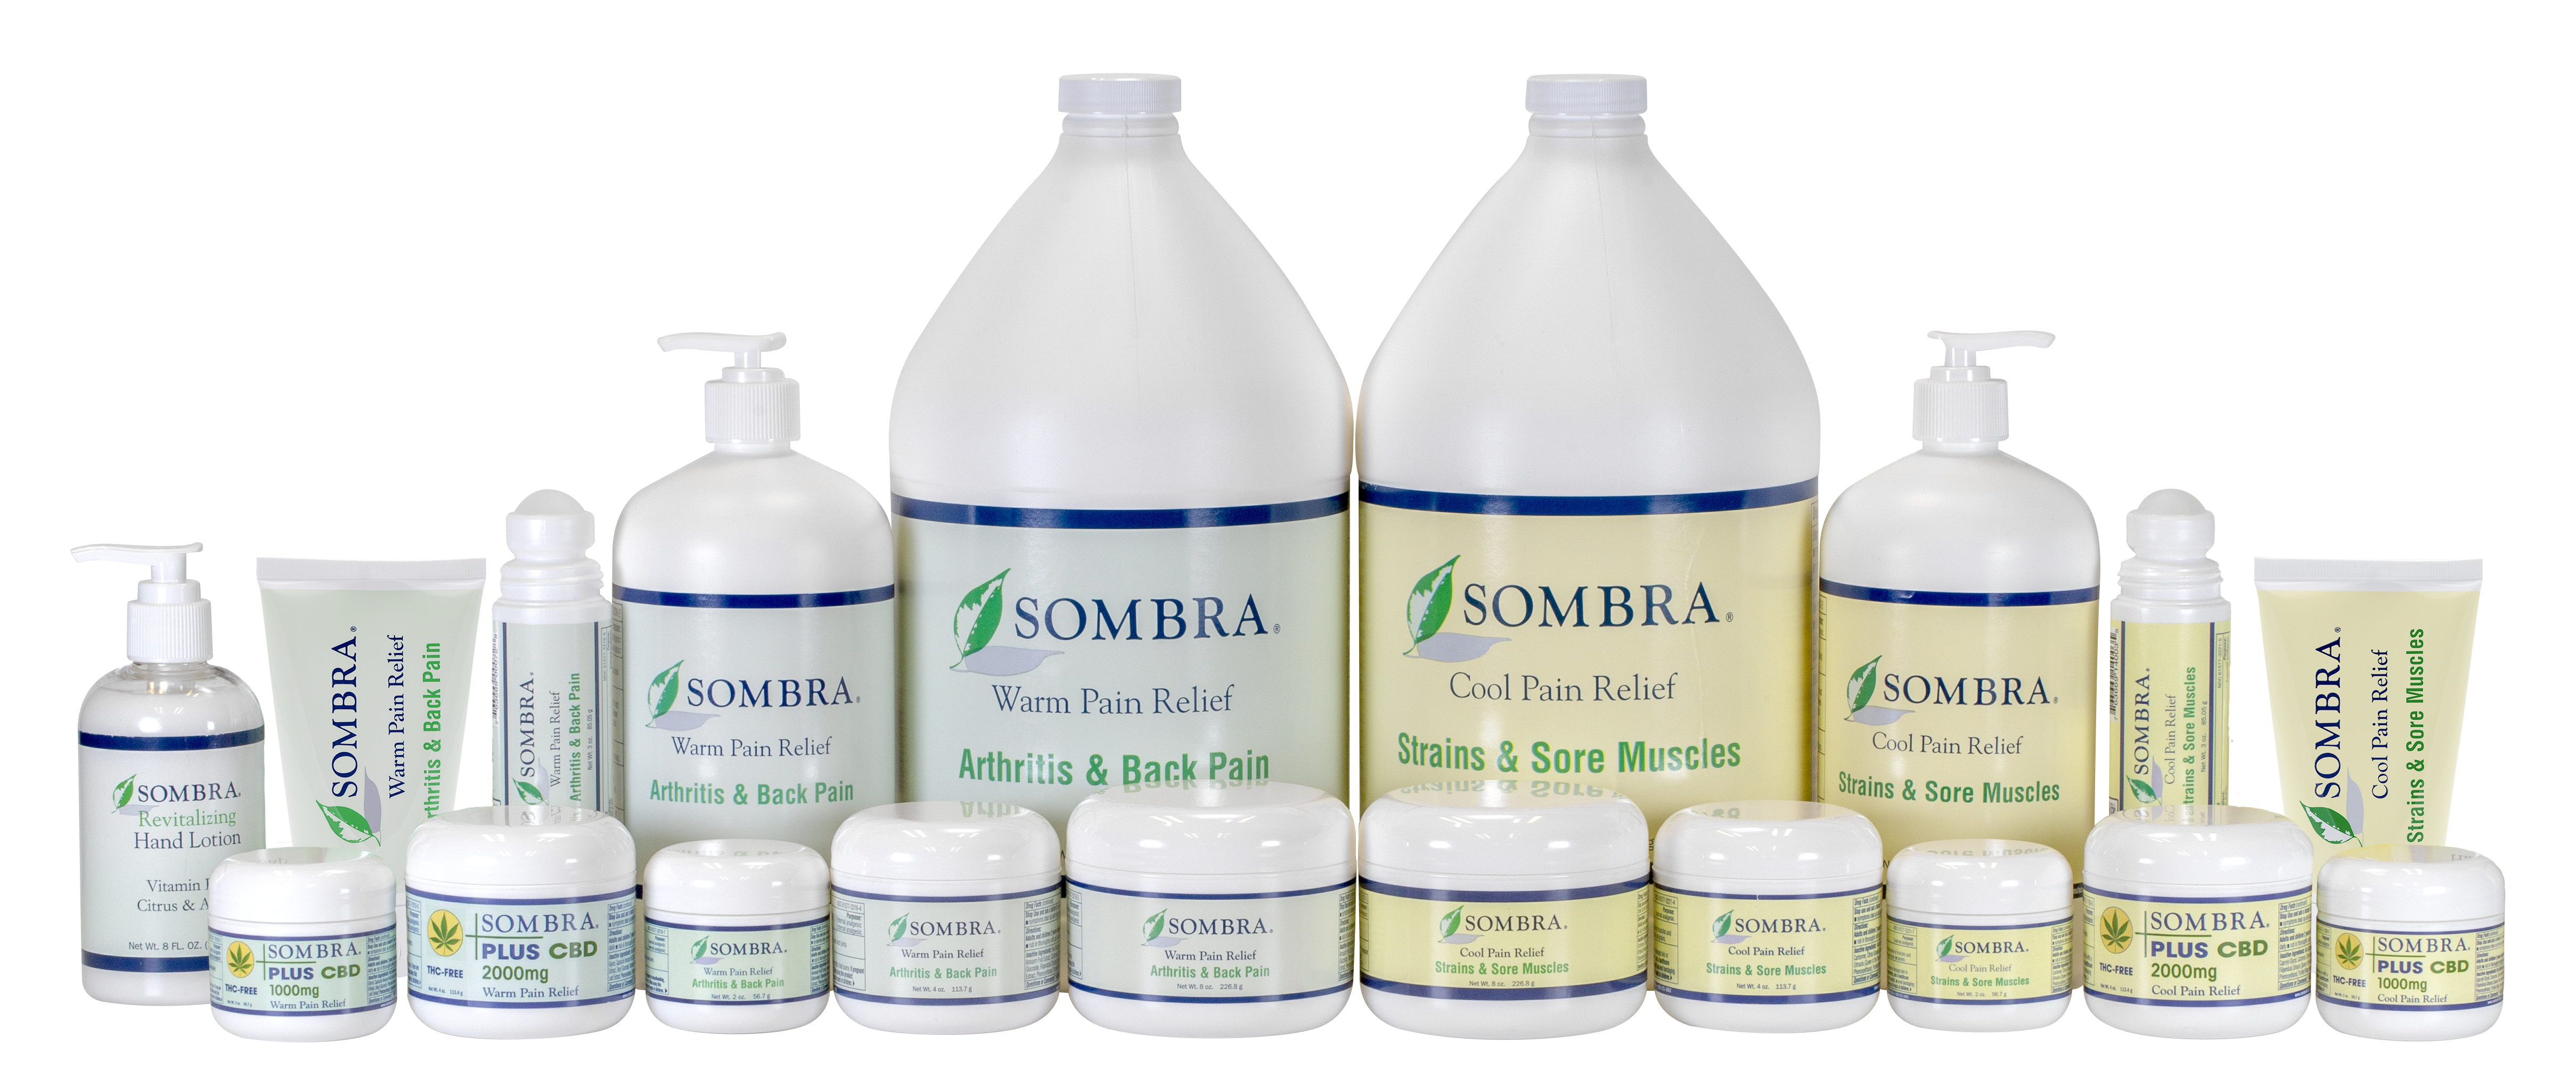 Sombra analgesic product group shot